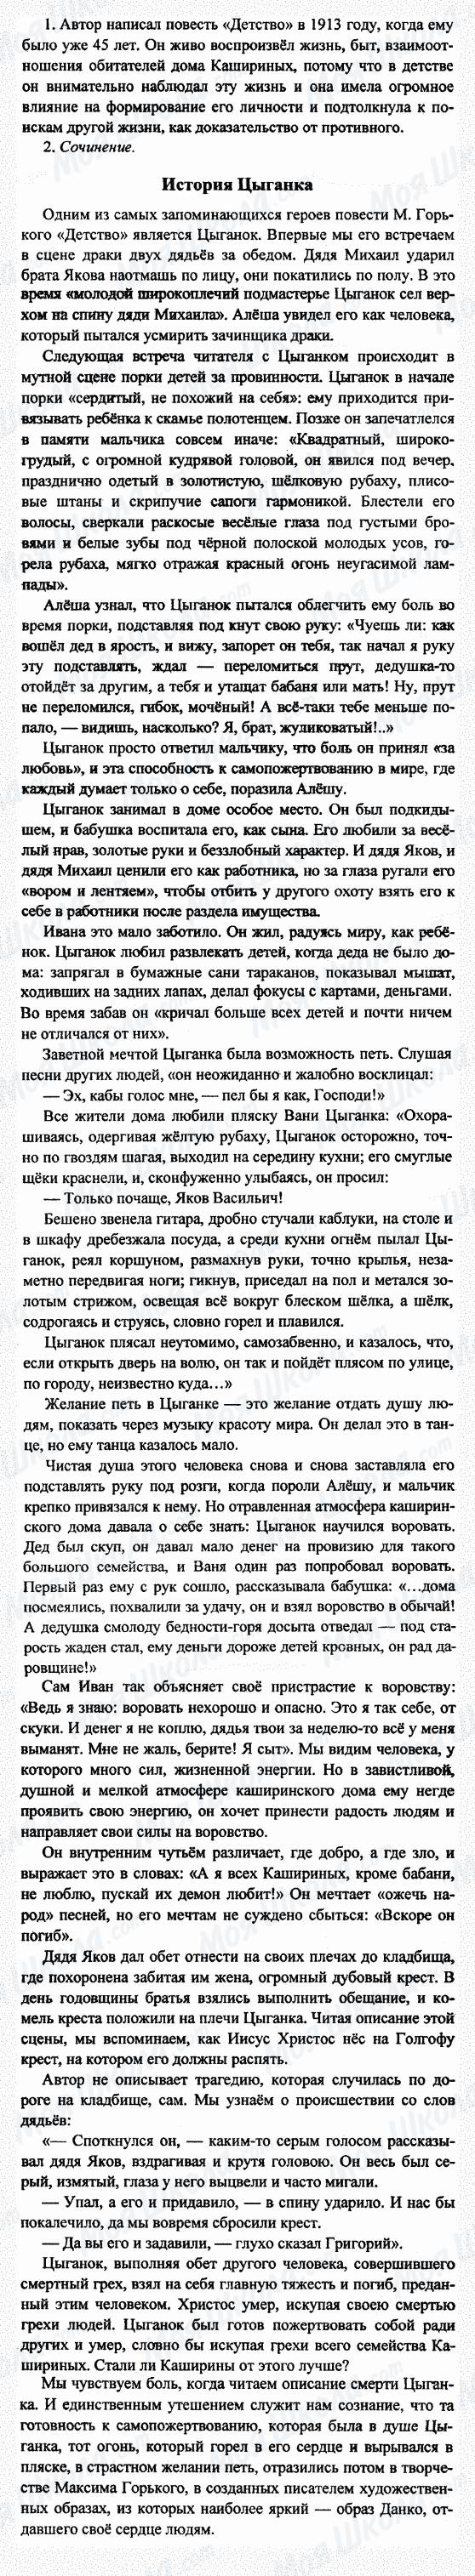 ГДЗ Русская литература 7 класс страница 1-2